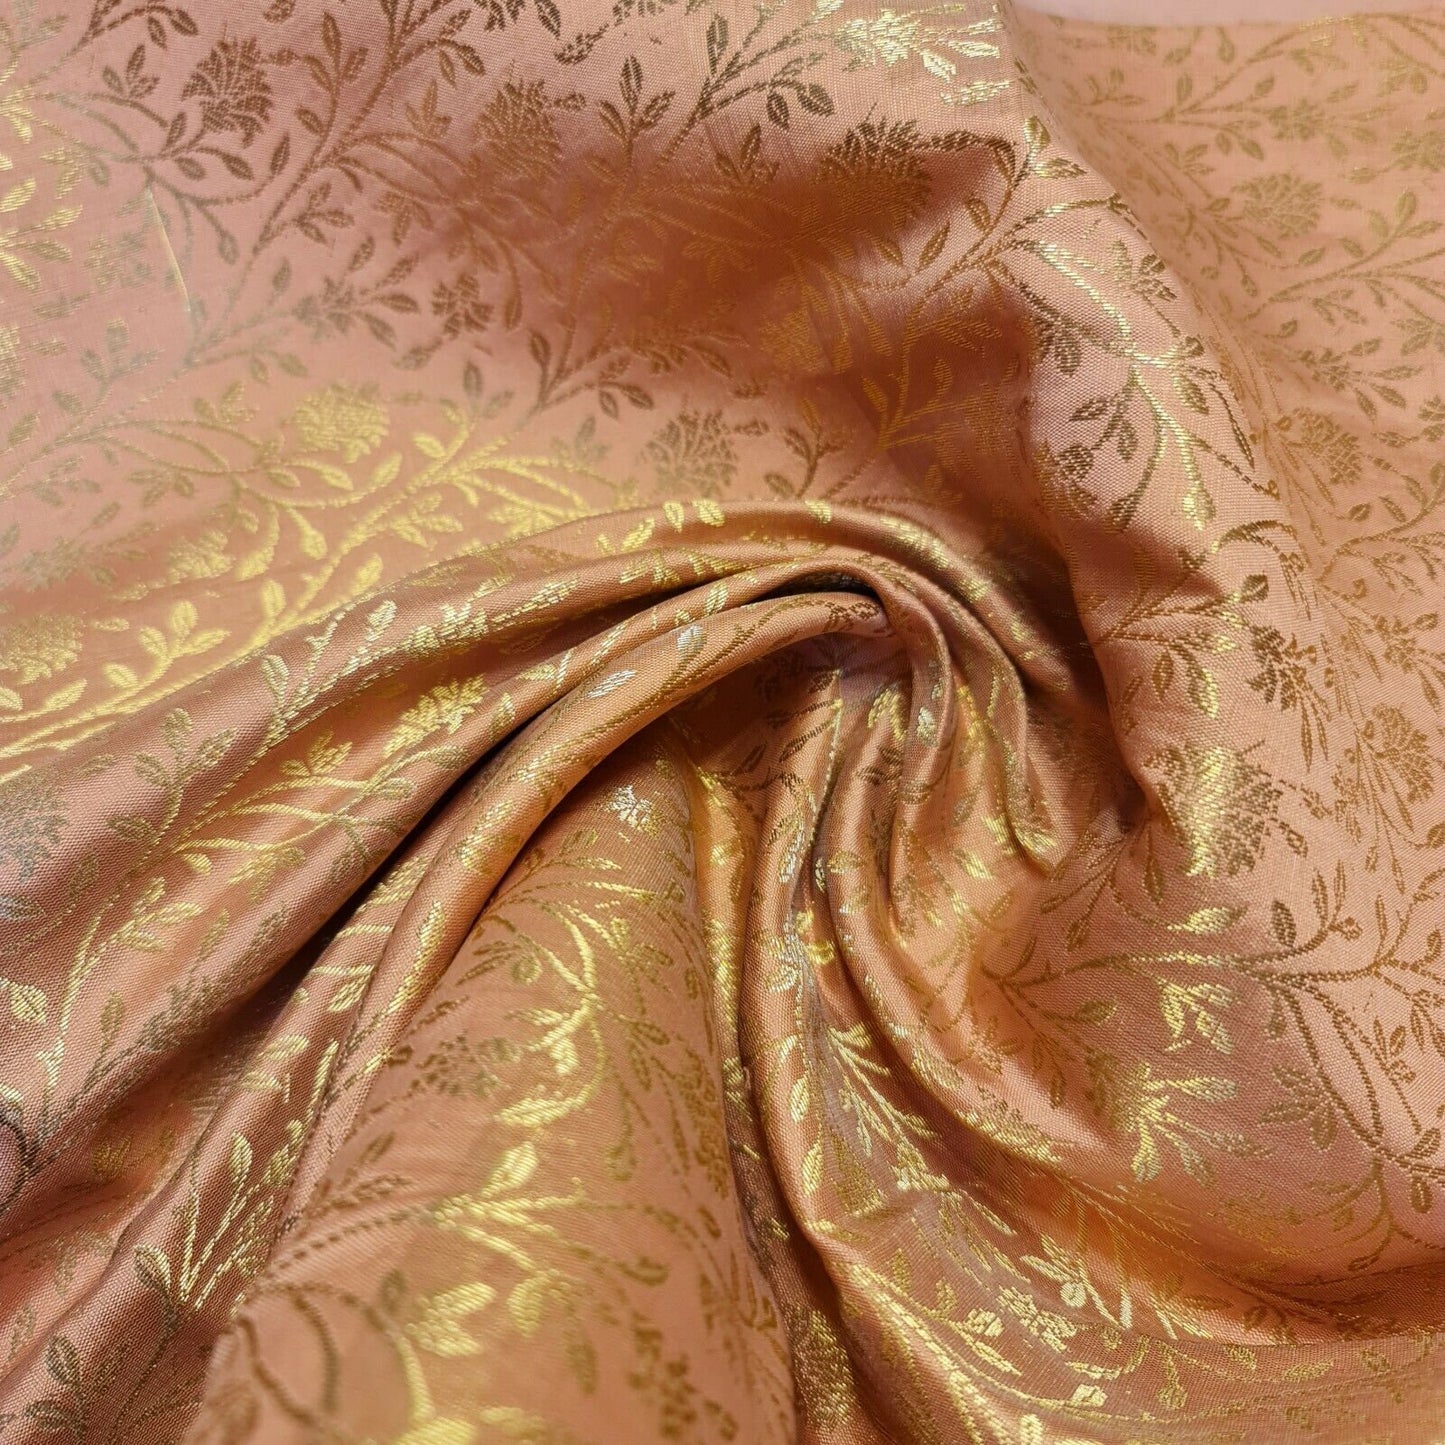 Floral Gold Metallic Indian Banaras Brocade Waistcoat Dress Curtain Fabric 58"